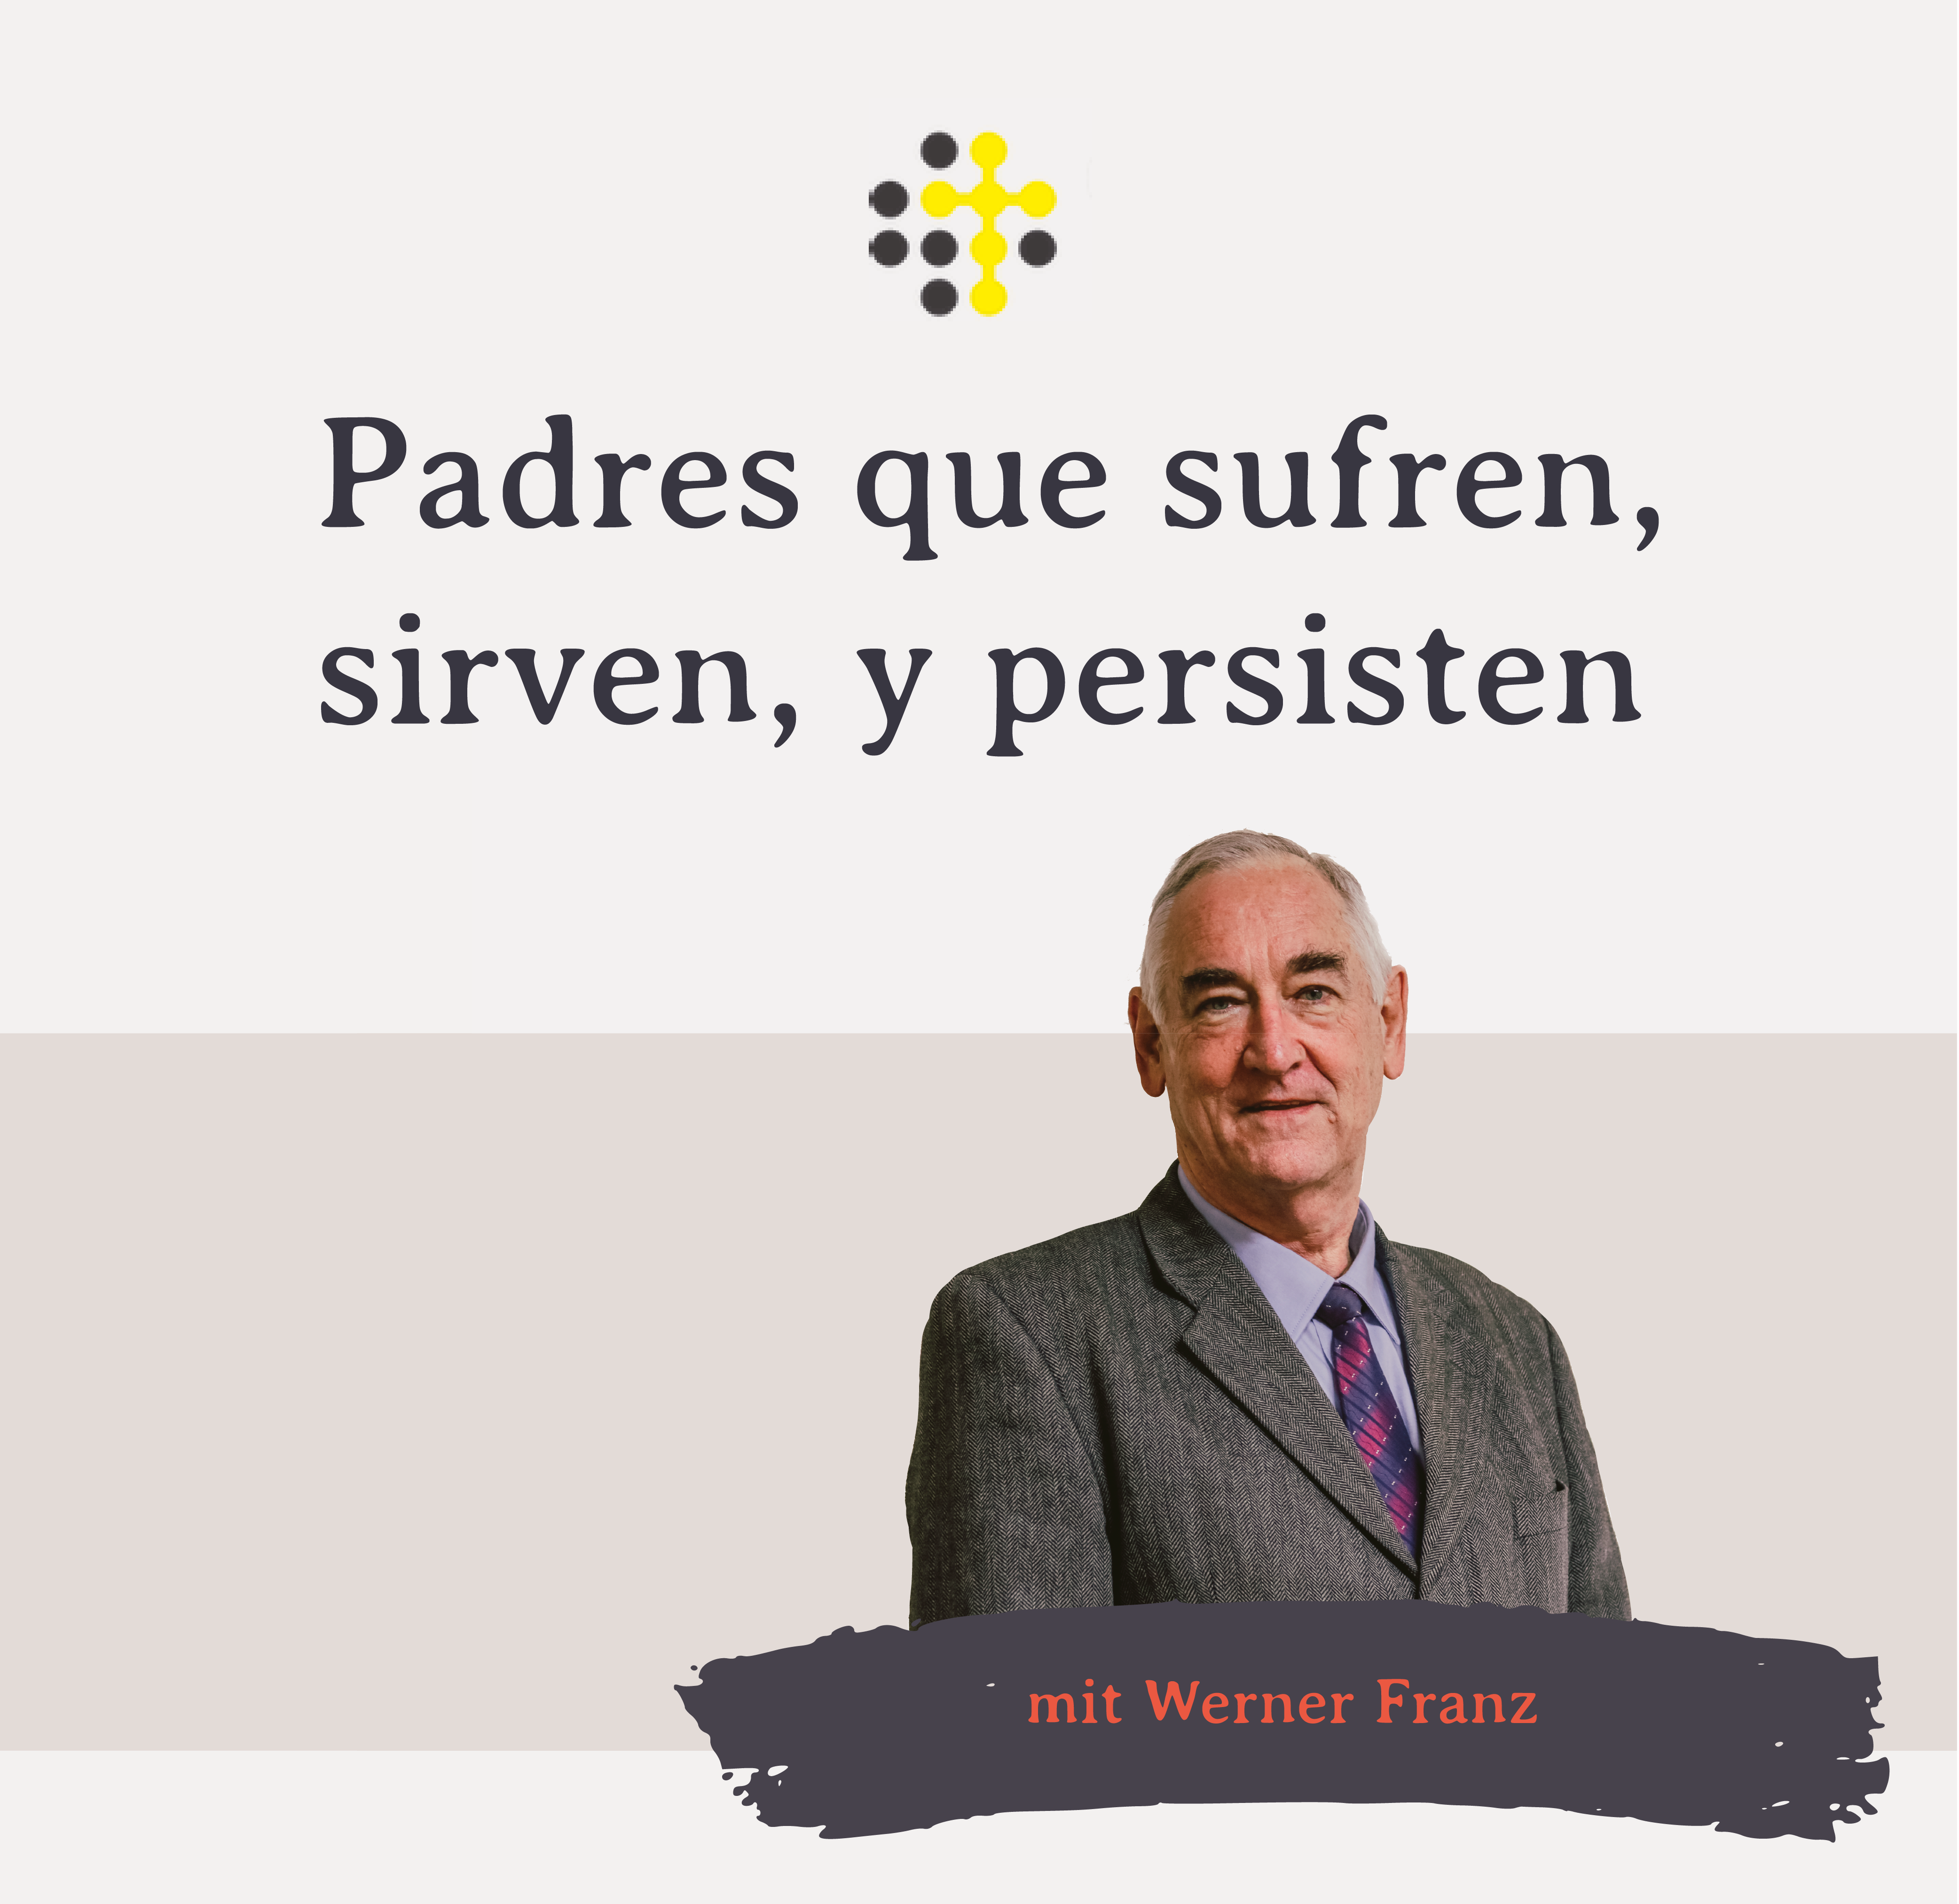 Padres que sufren, sirven, y persisten – Orador: Werner Franz